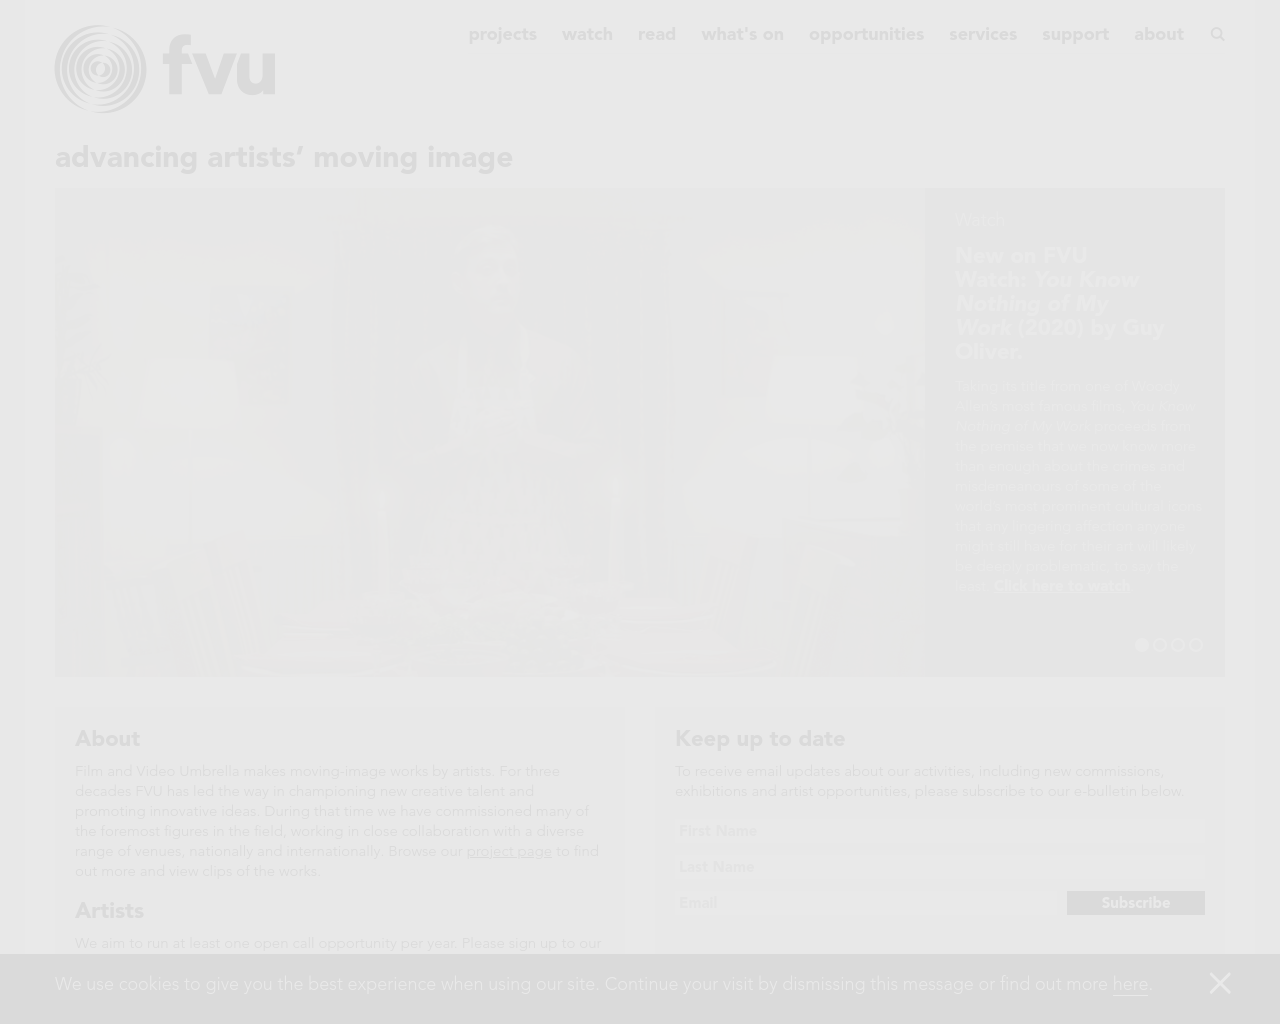 fvu.co.uk